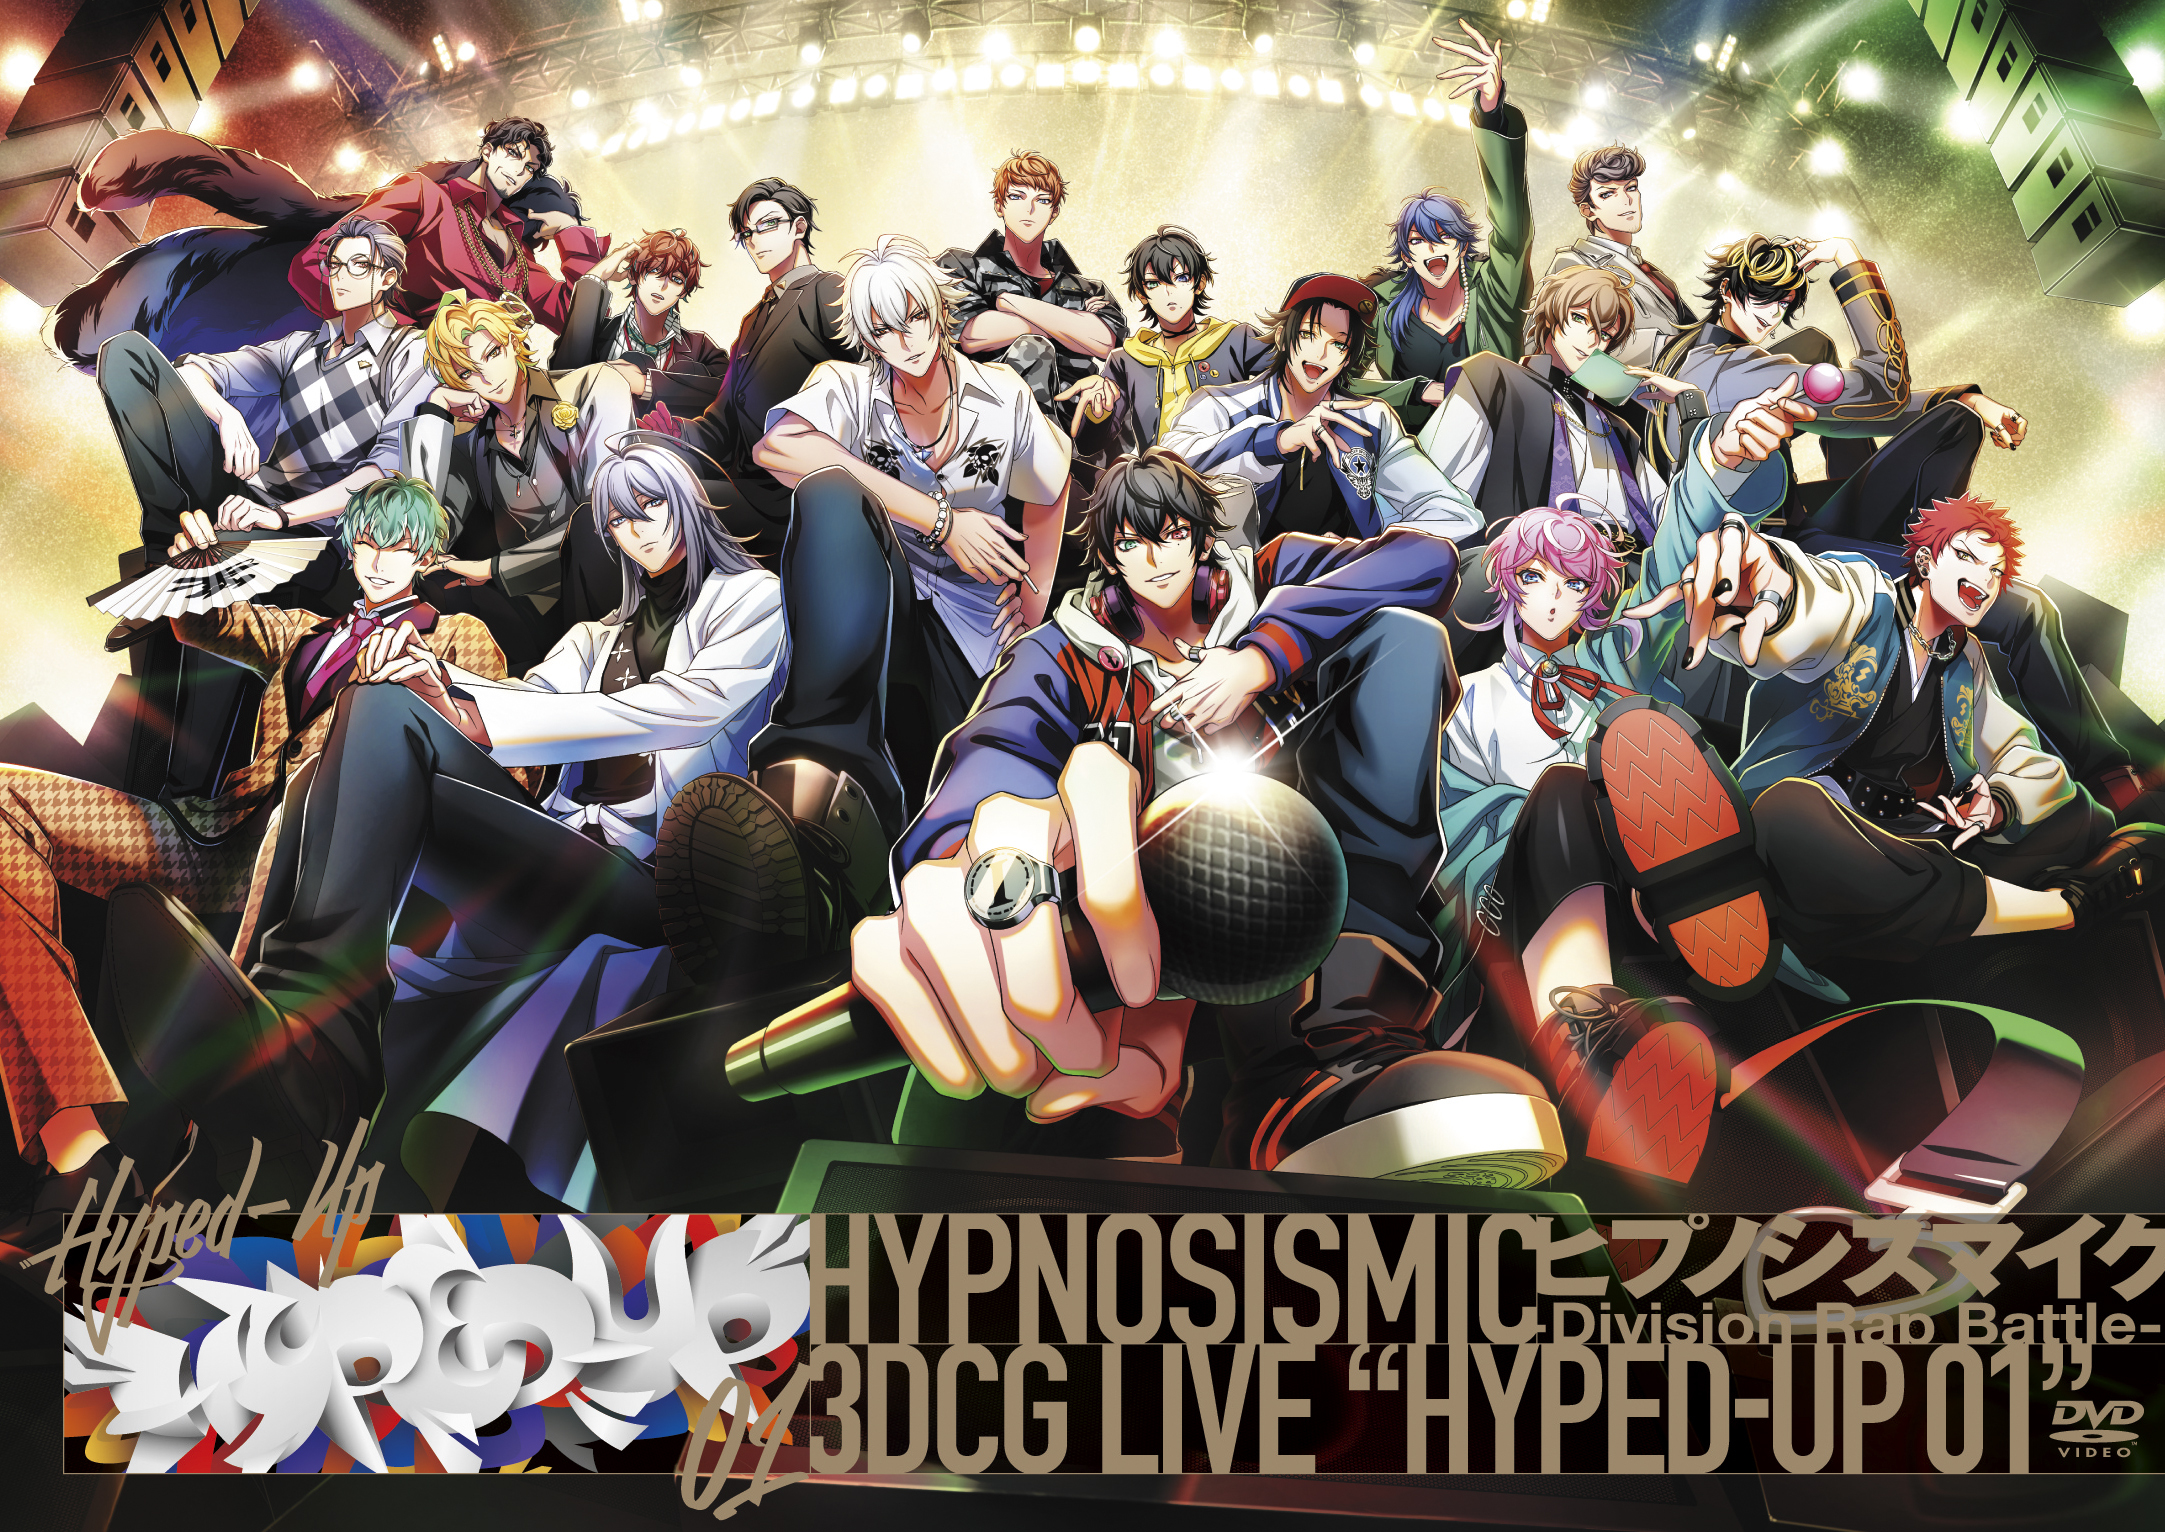 ヒプノシスマイク ヒプマイ 3DCG LIVE “HYPED-UP 01 DVD 